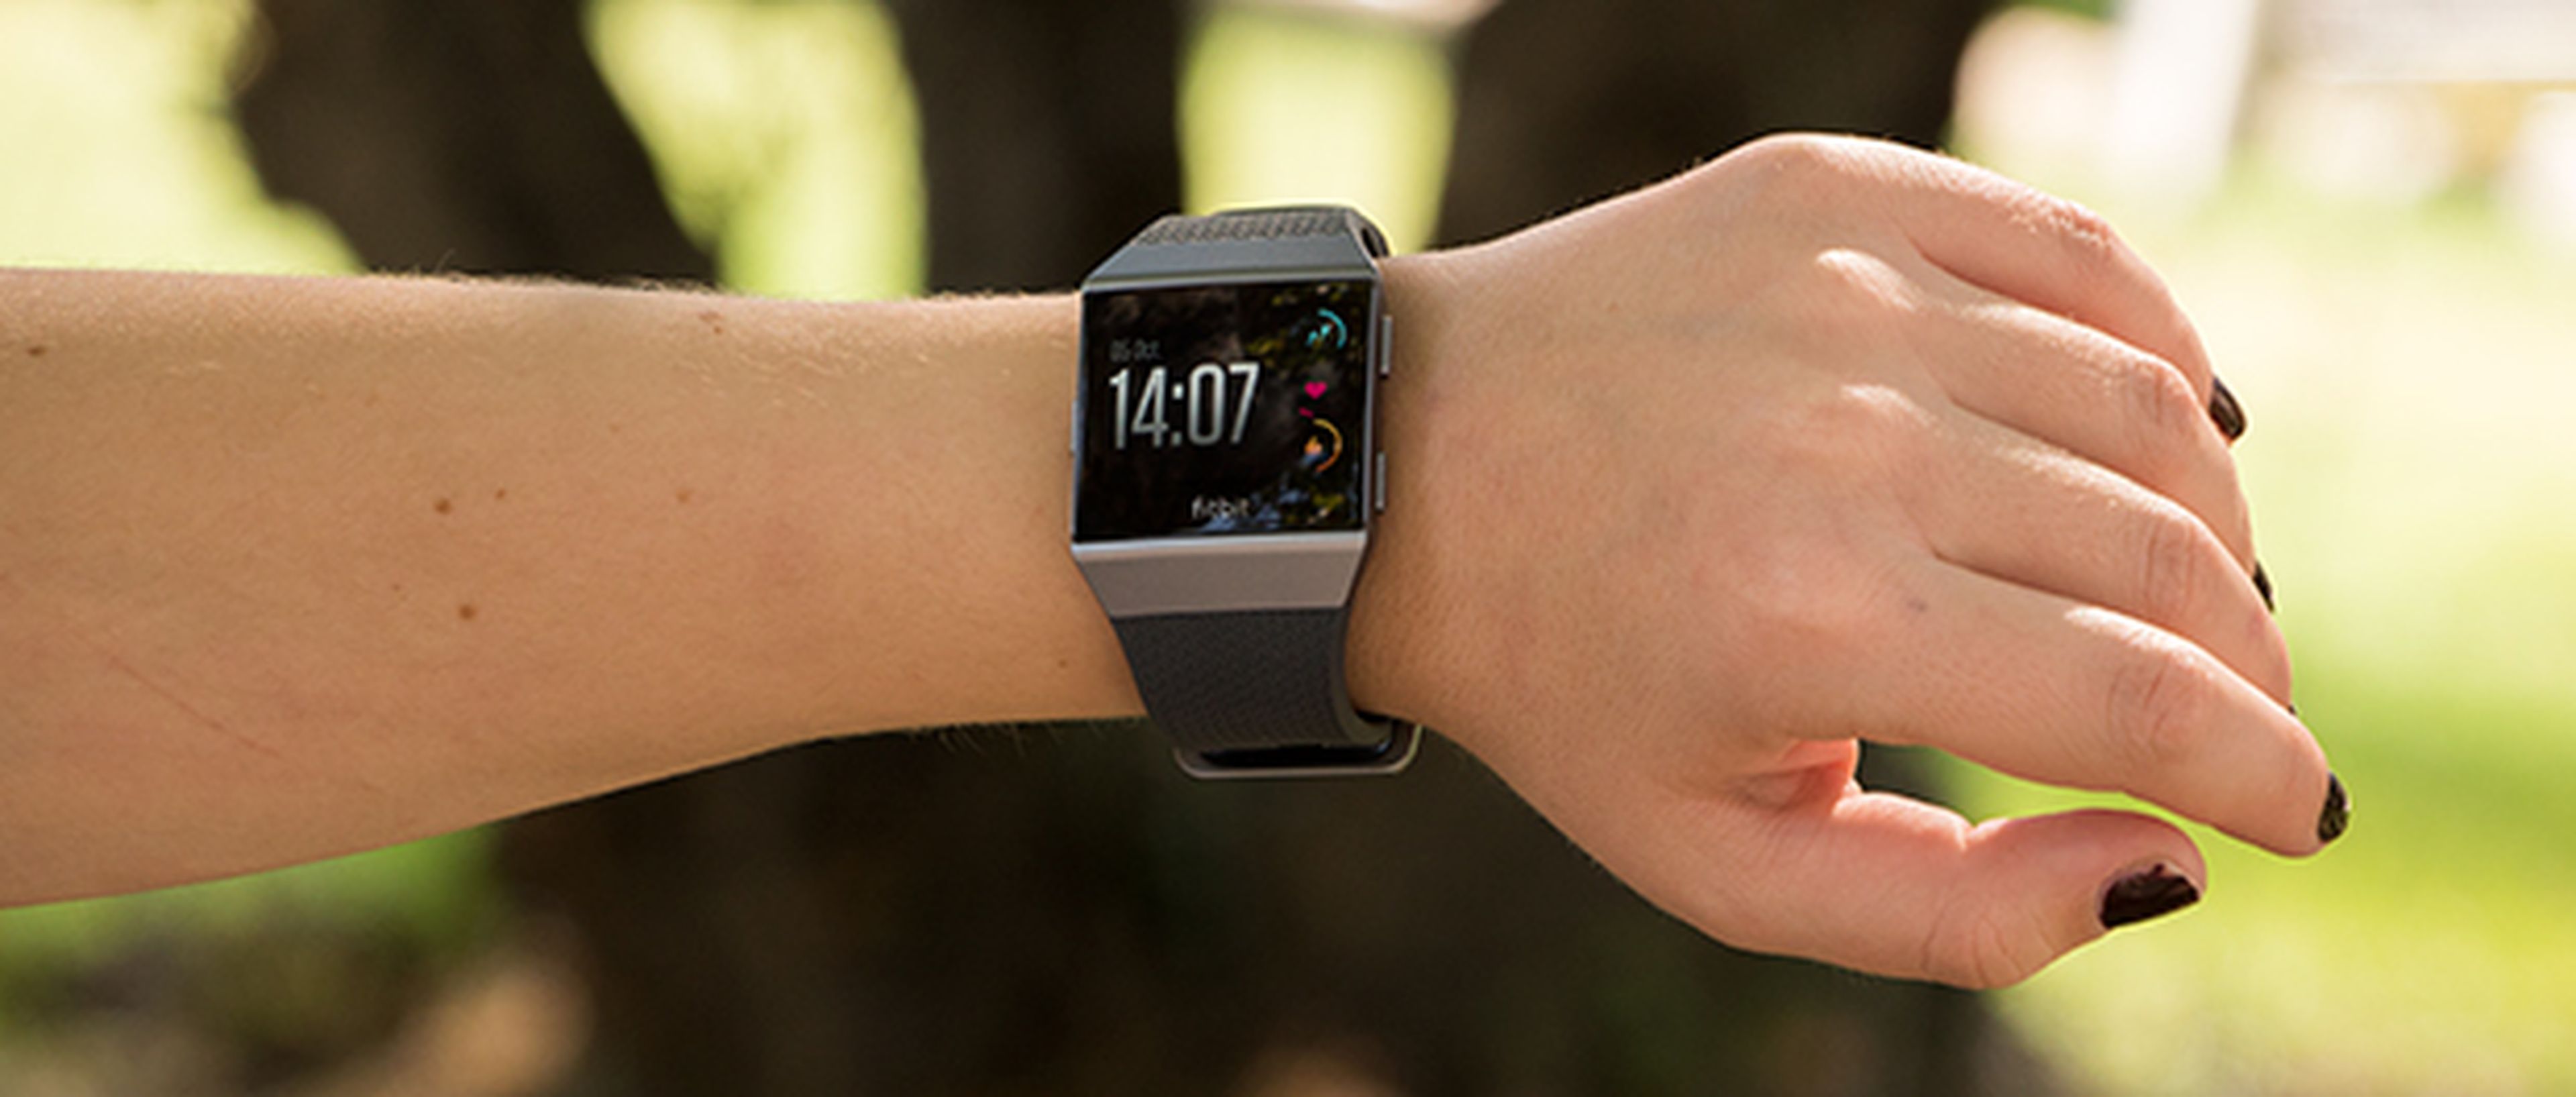 Pasa el ratón por encima de la imagen para ver las diferencias entre el Fitbit Ionic y el Apple Watch Series 3